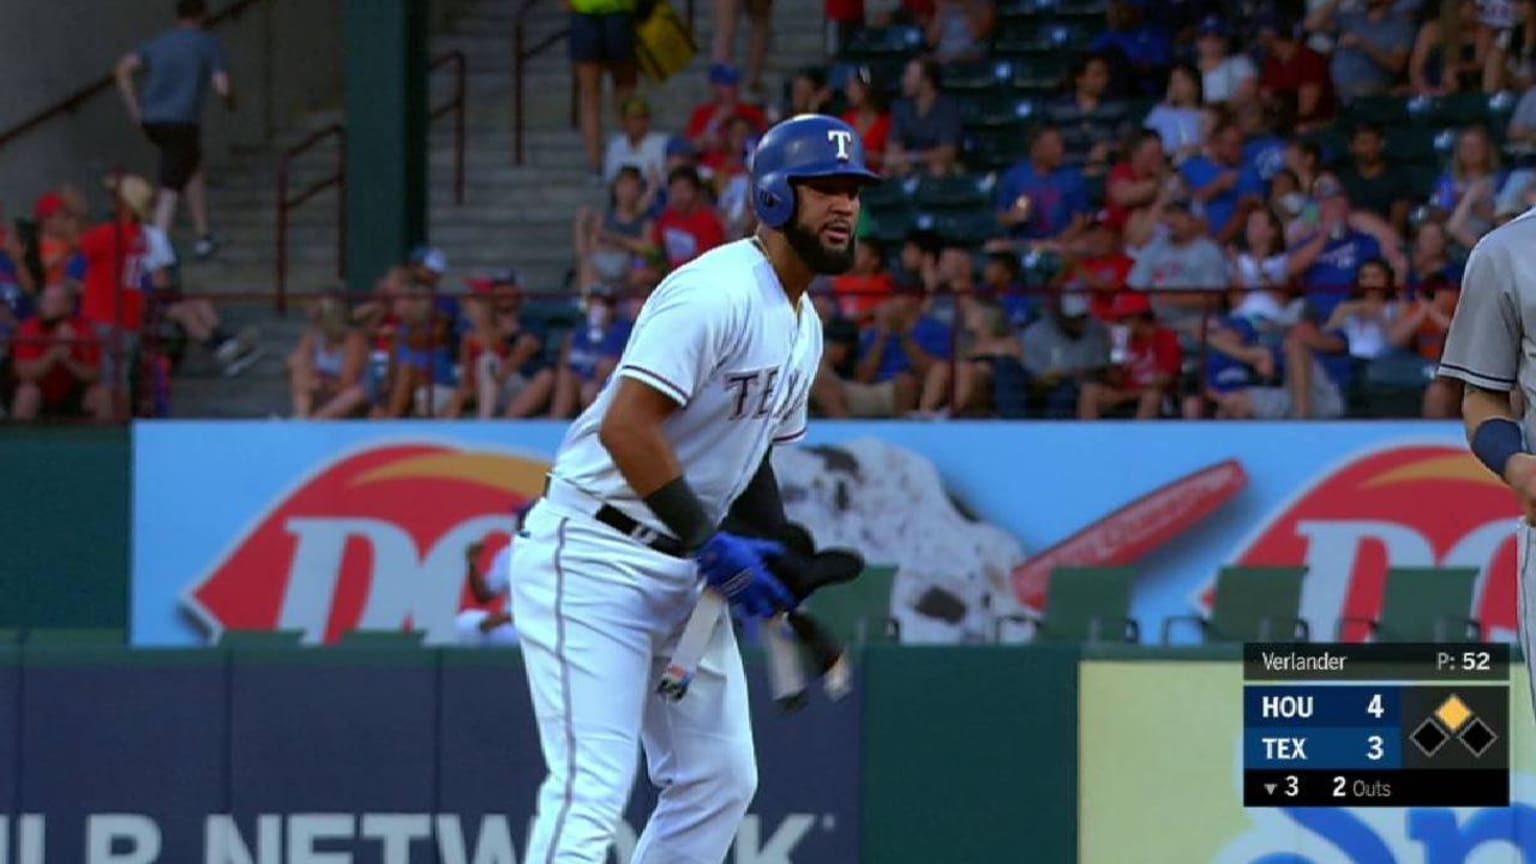 2023 Houston Astros BP Jersey HOU Stance MLB Baseball Socks Large